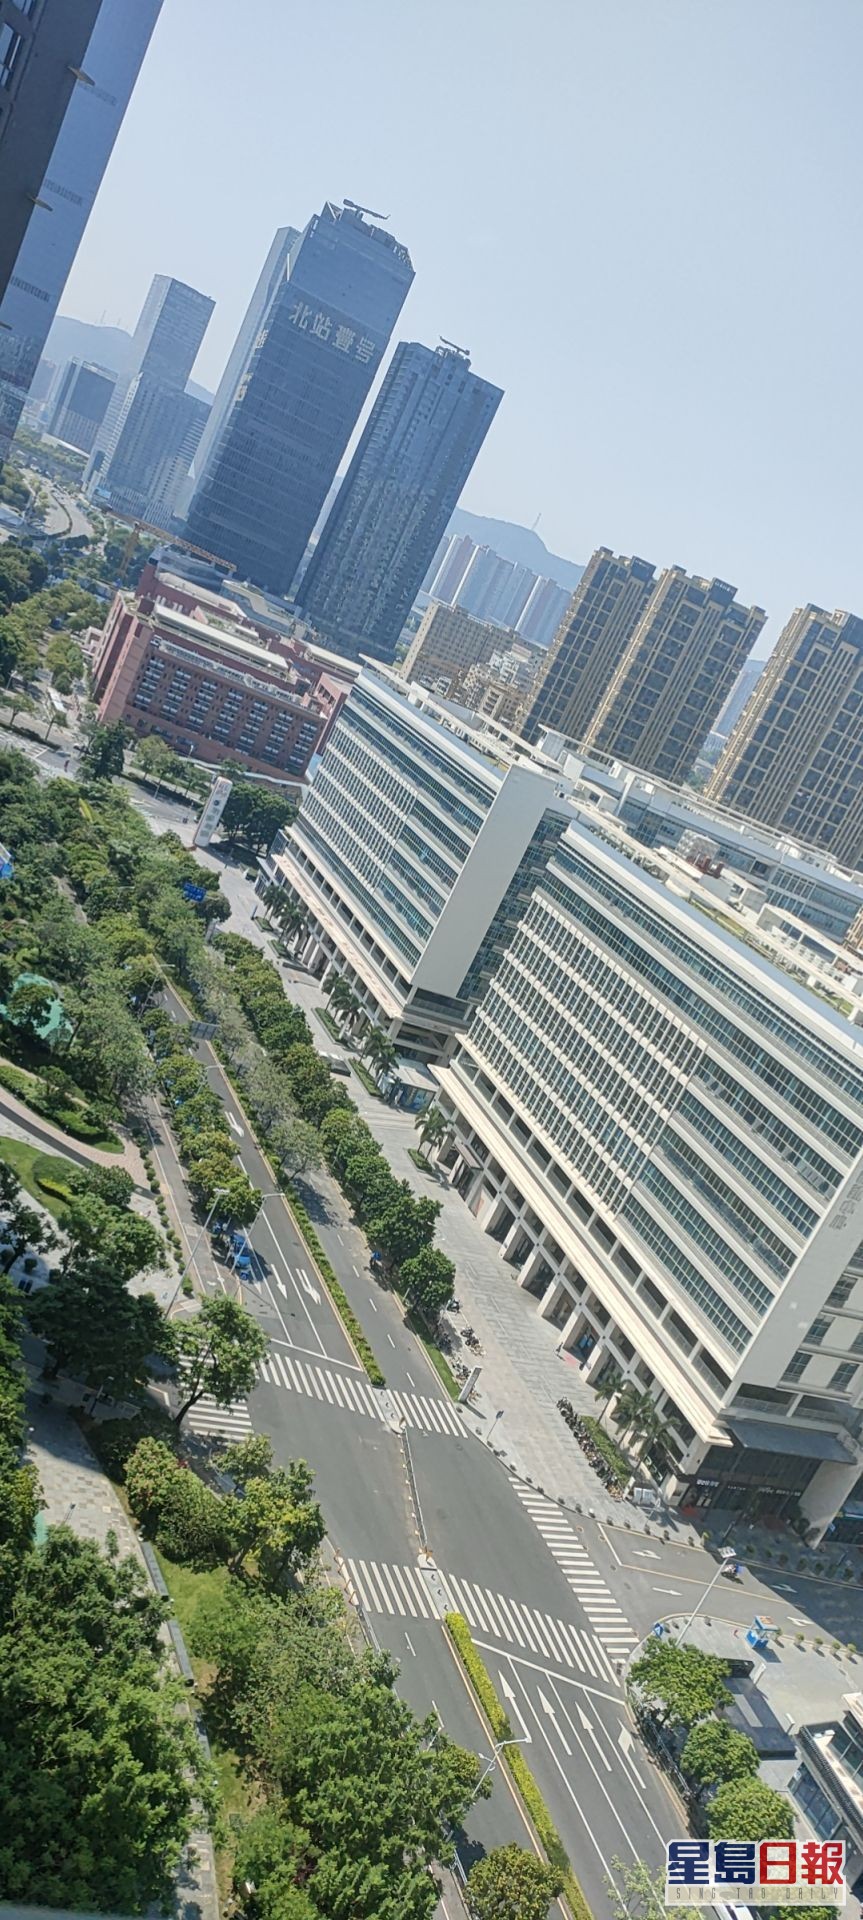 龍華區的高鐵深圳北站周邊路上幾近無人。讀者提供